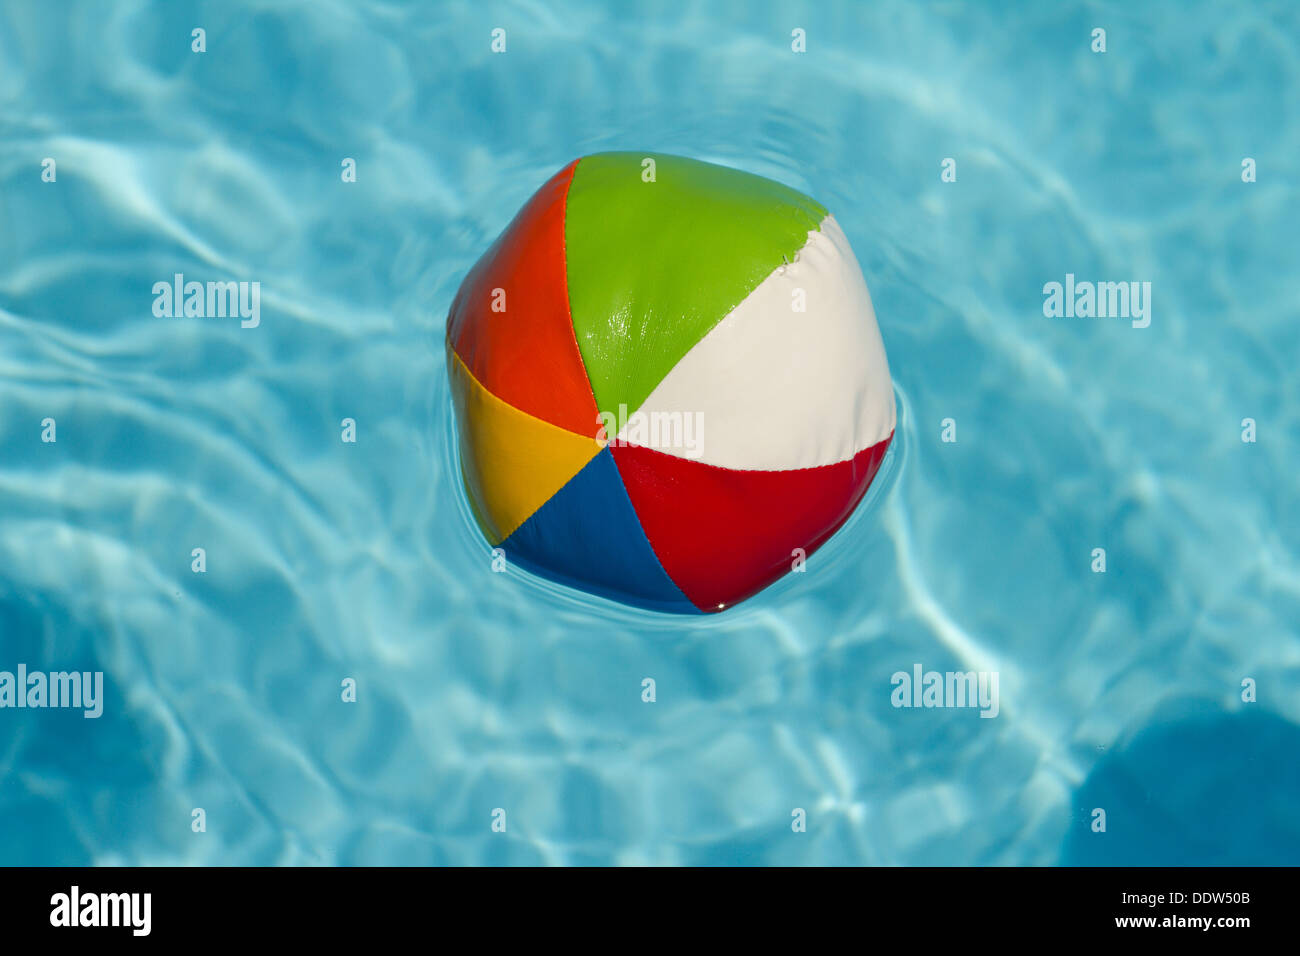 Einen bunten Wasserball schwebend in einem leuchtend blauen Swimmingpool. Stockfoto